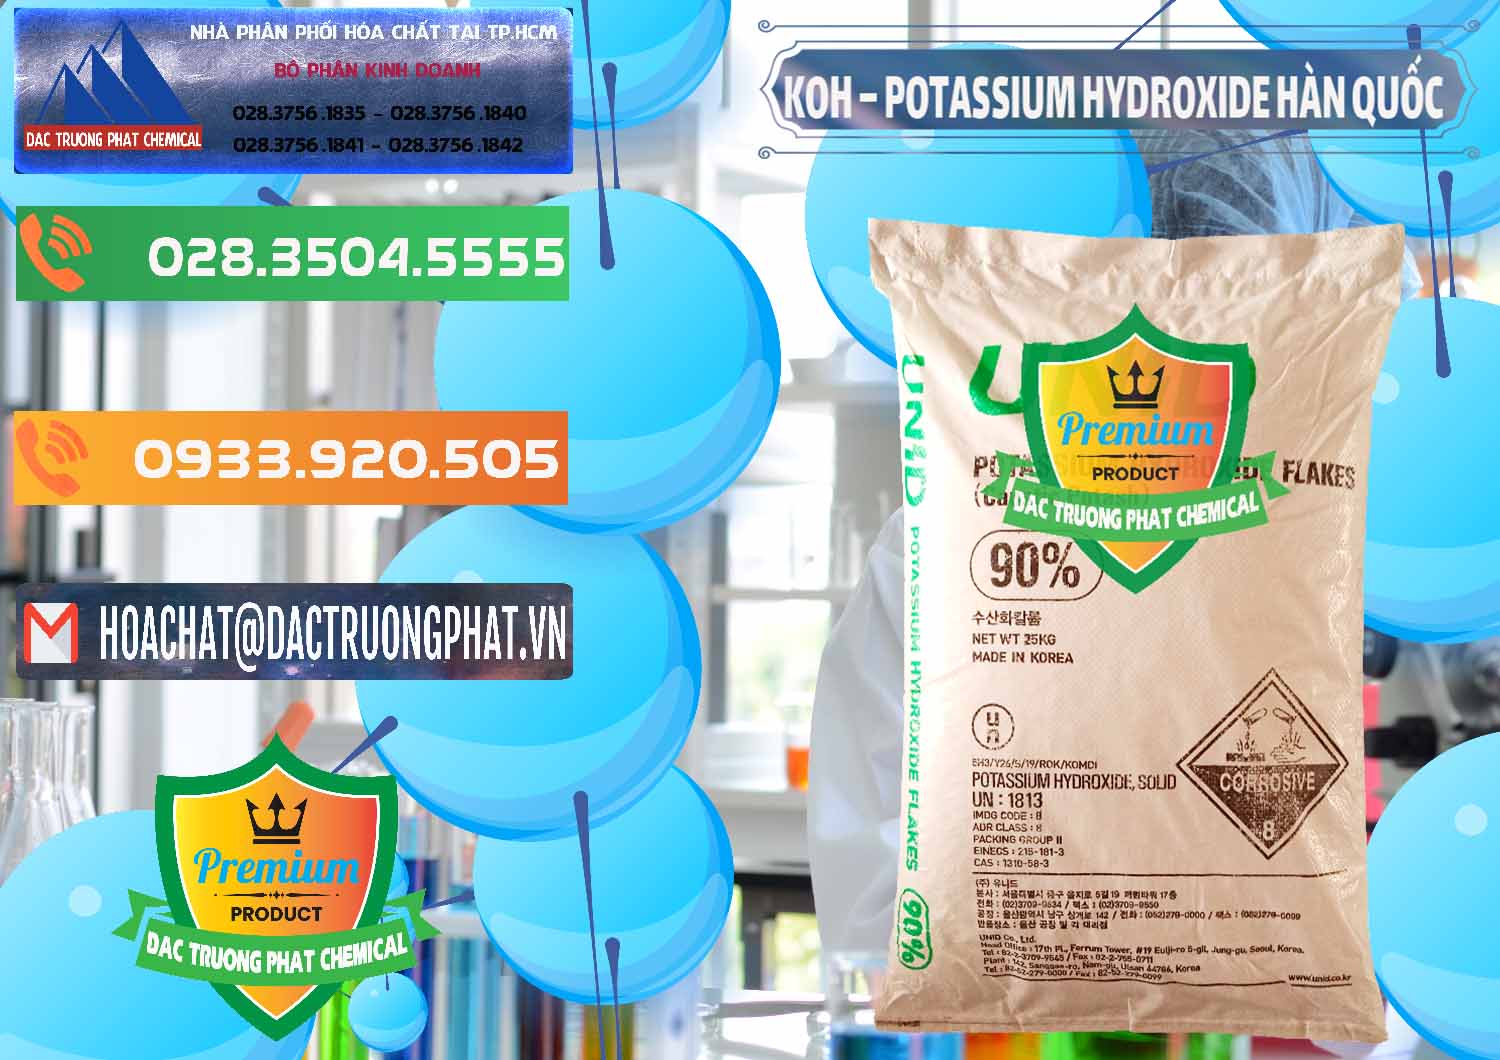 Nơi nhập khẩu và bán KOH ( 90%) – Potassium Hydroxide Unid Hàn Quốc Korea - 0090 - Cty chuyên phân phối ( kinh doanh ) hóa chất tại TP.HCM - hoachatxulynuoc.com.vn